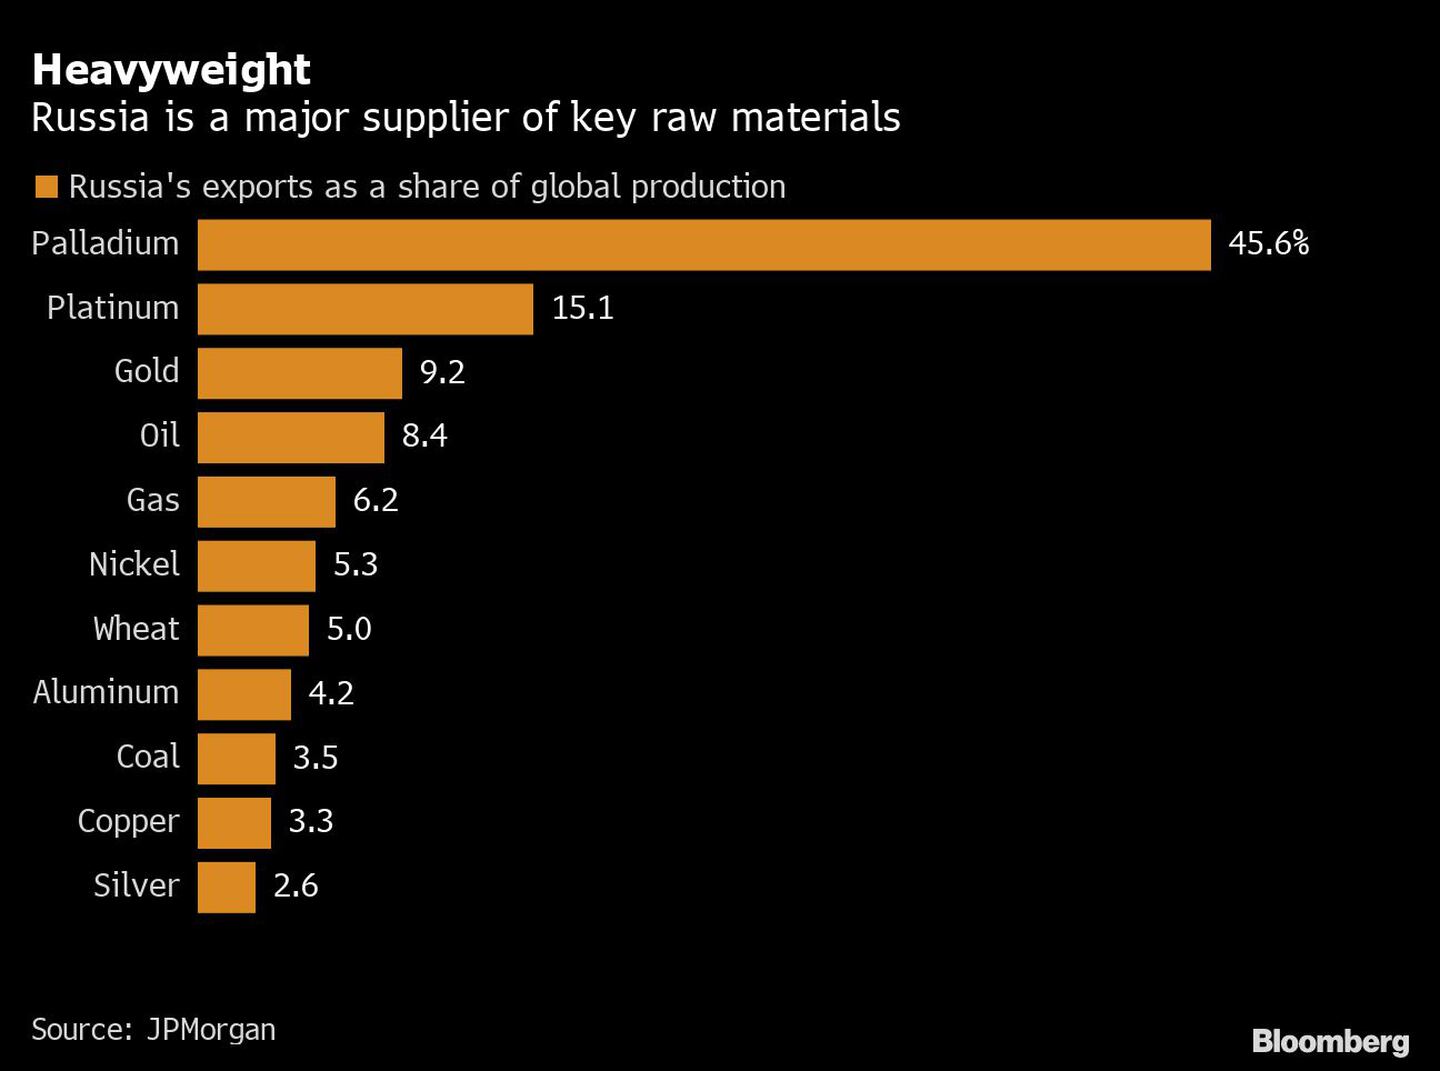 De gran peso
Rusia es un importante proveedor de materias primas clave
Naranja: Exportaciones de Rusia como parte de la producción mundial
Paladio, platino, oro, petróleo, gas, níquel, trigo, aluminio, carbón, cobre y platadfd